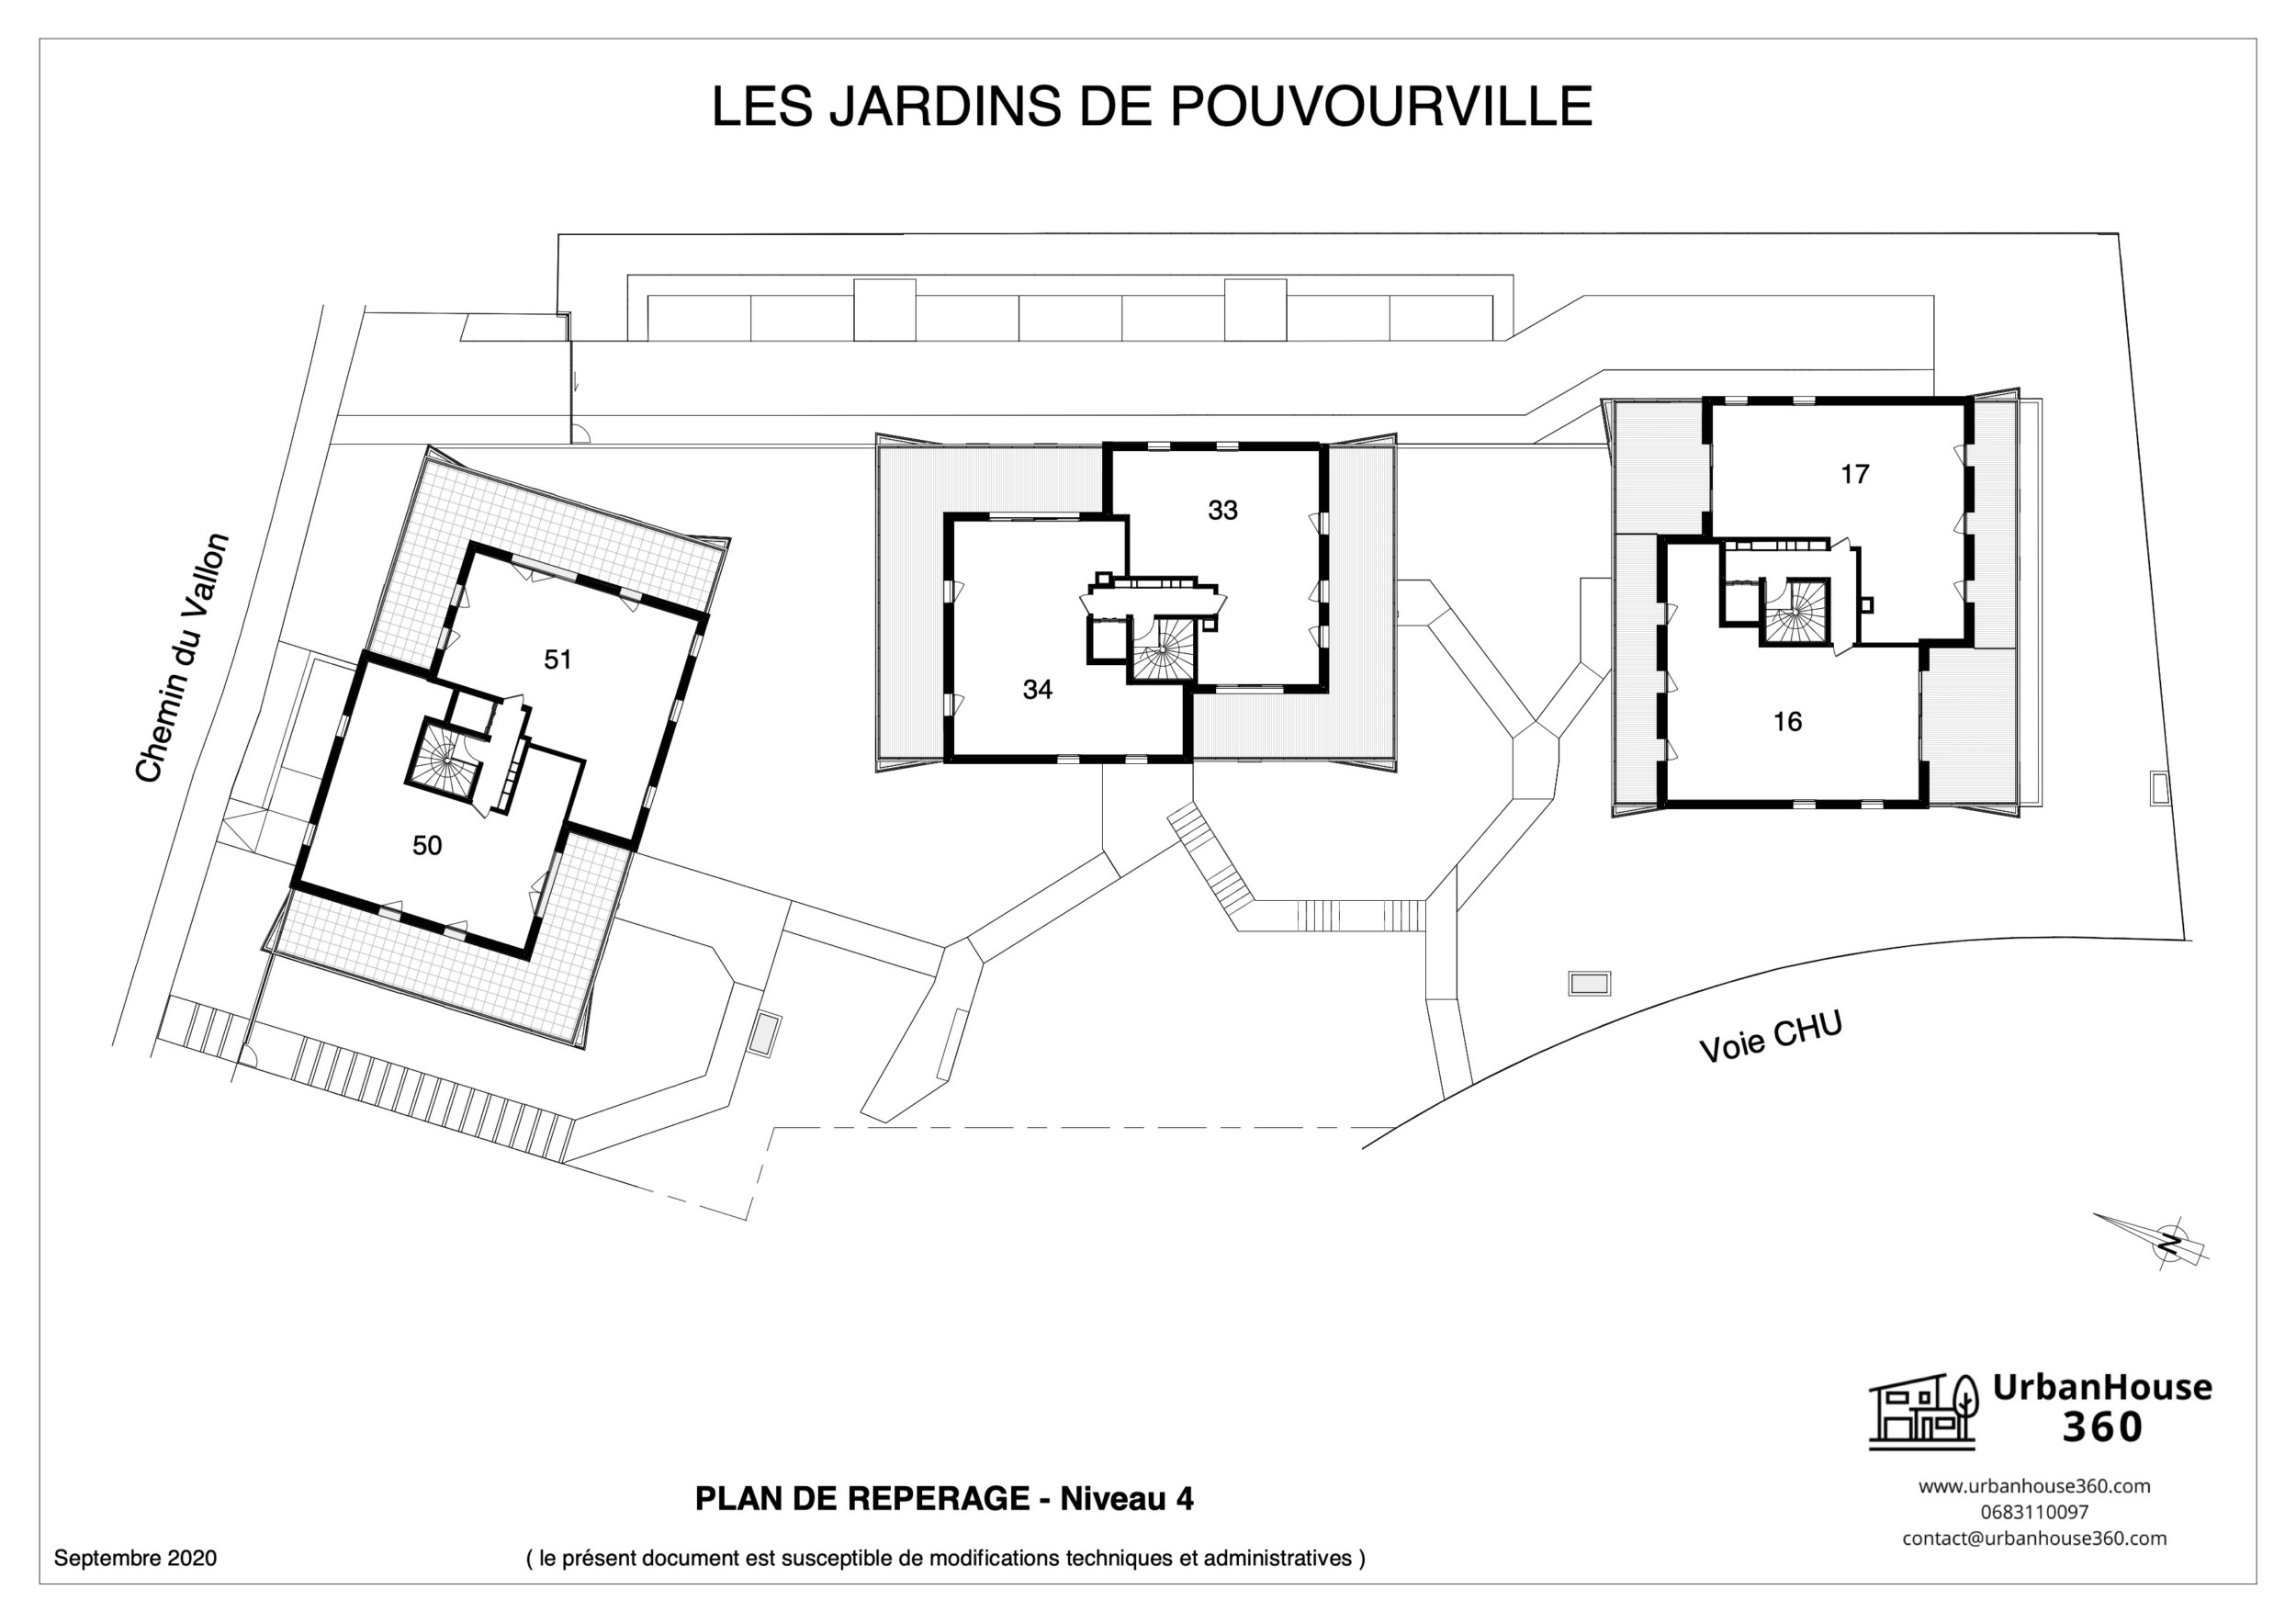 UrbanHouse360-plans_de_reperage-les_jardins_de_pouvourville 5